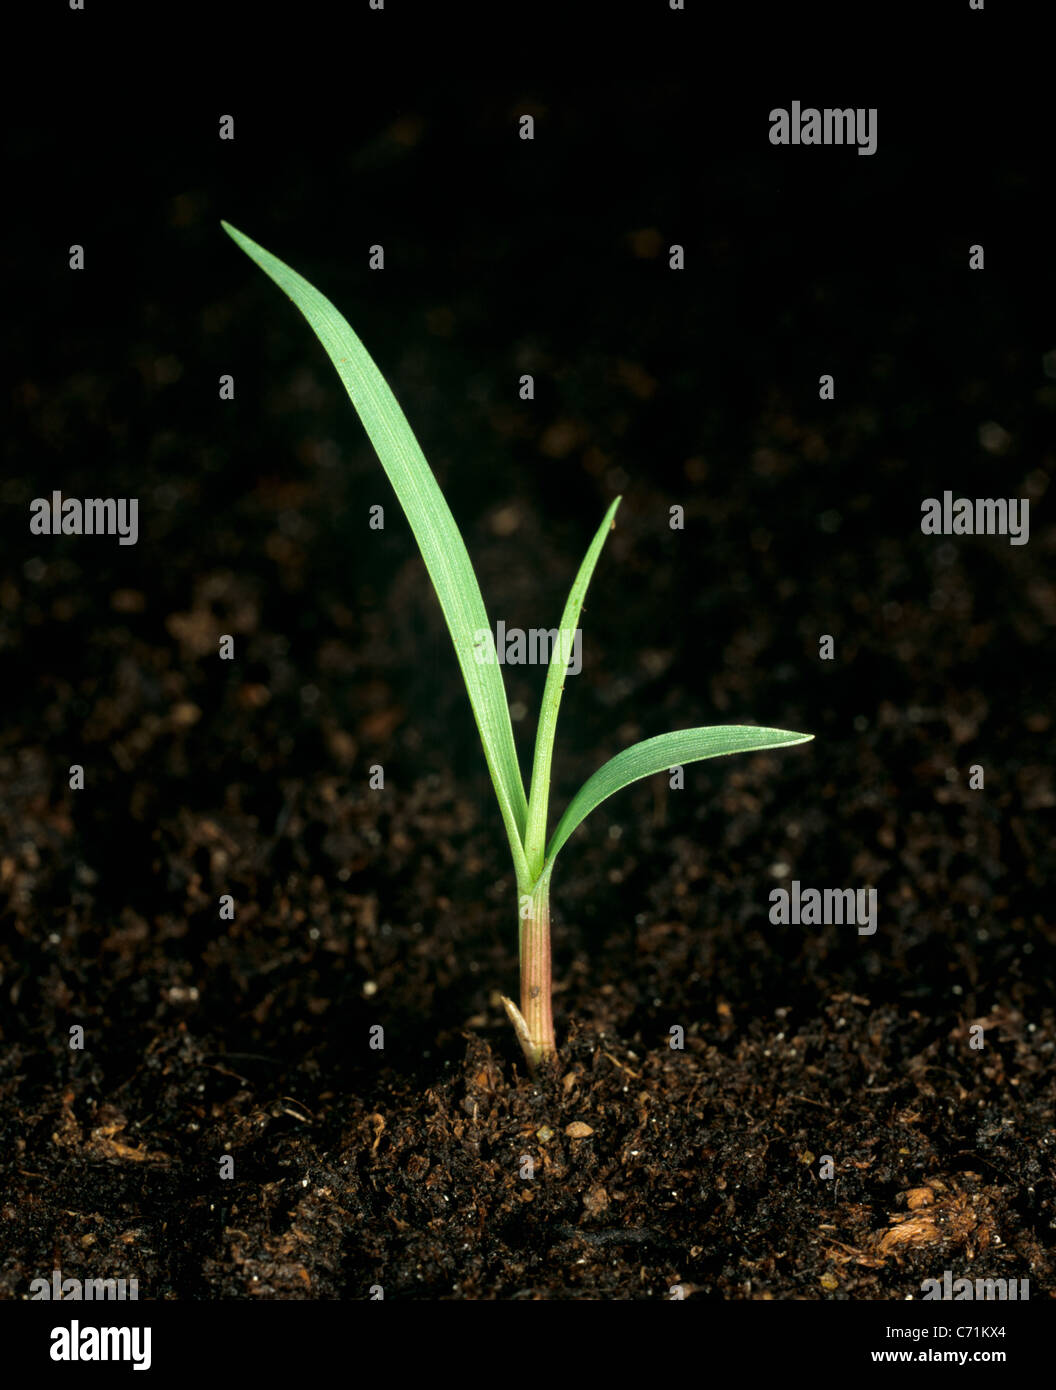 Mossmon rivergrass (Cenchrus echinatus) seedling Stock Photo